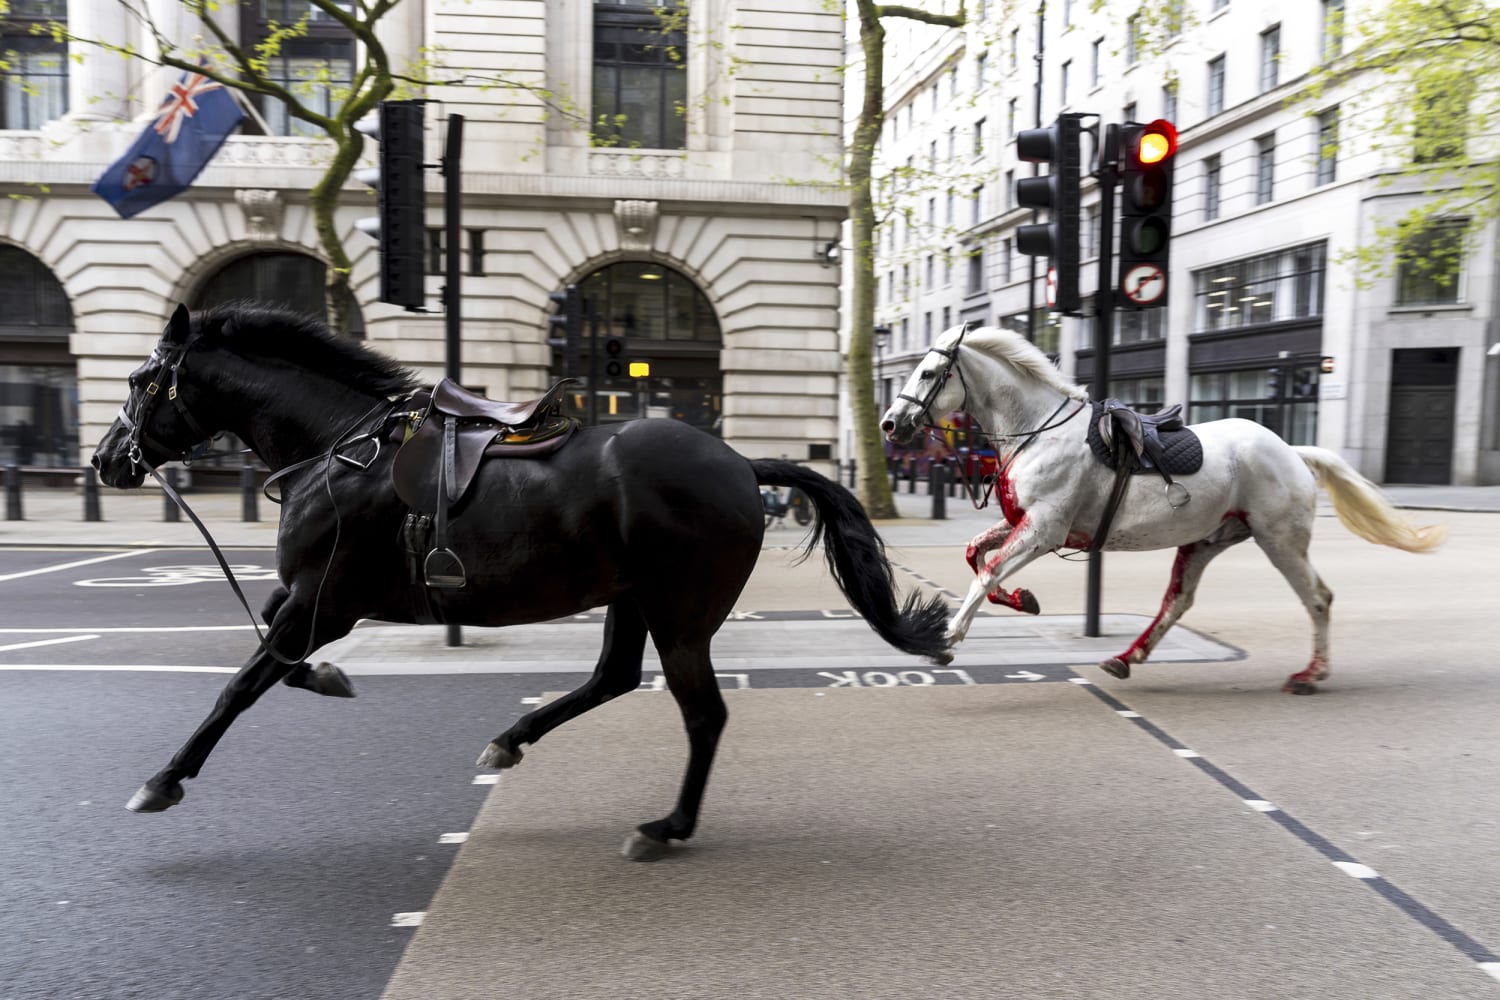 خيول هاربة من معسكر للجيش البريطاني تحدث بلبلة في لندن وتسبب إصابات